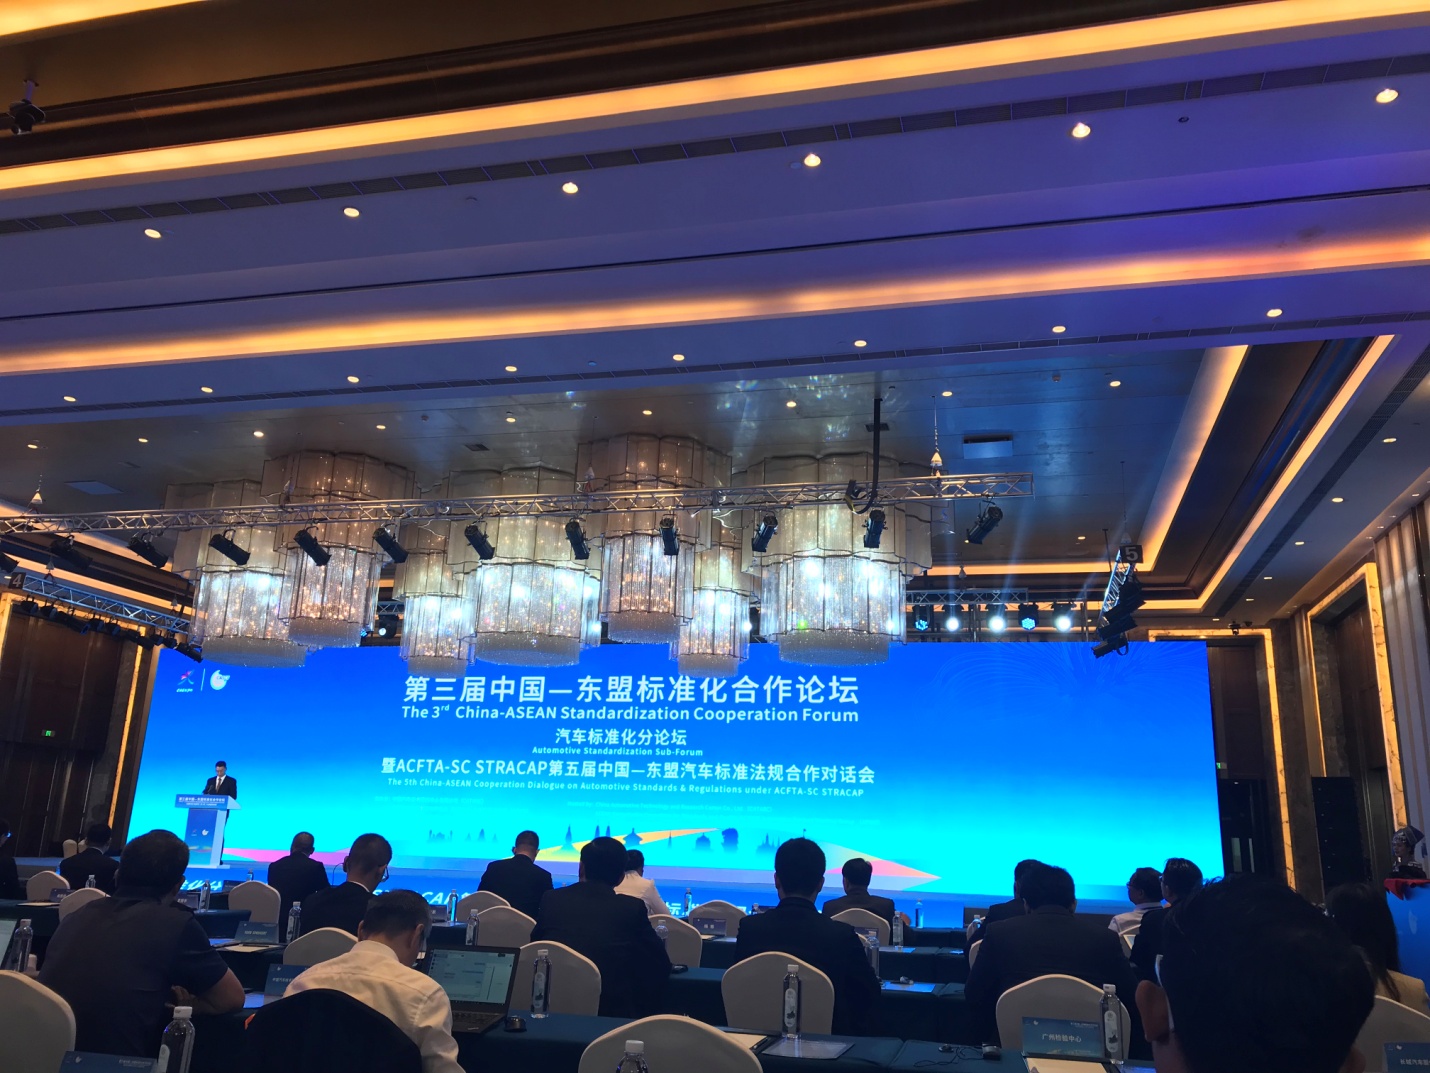 တတိယအကြိမ် တရုတ် - အာဆီယံ စံချိန်စံညွှန်းဆိုင်ရာ ပူးပေါင်းဆောင်ရွက်ရေးဖိုရမ်